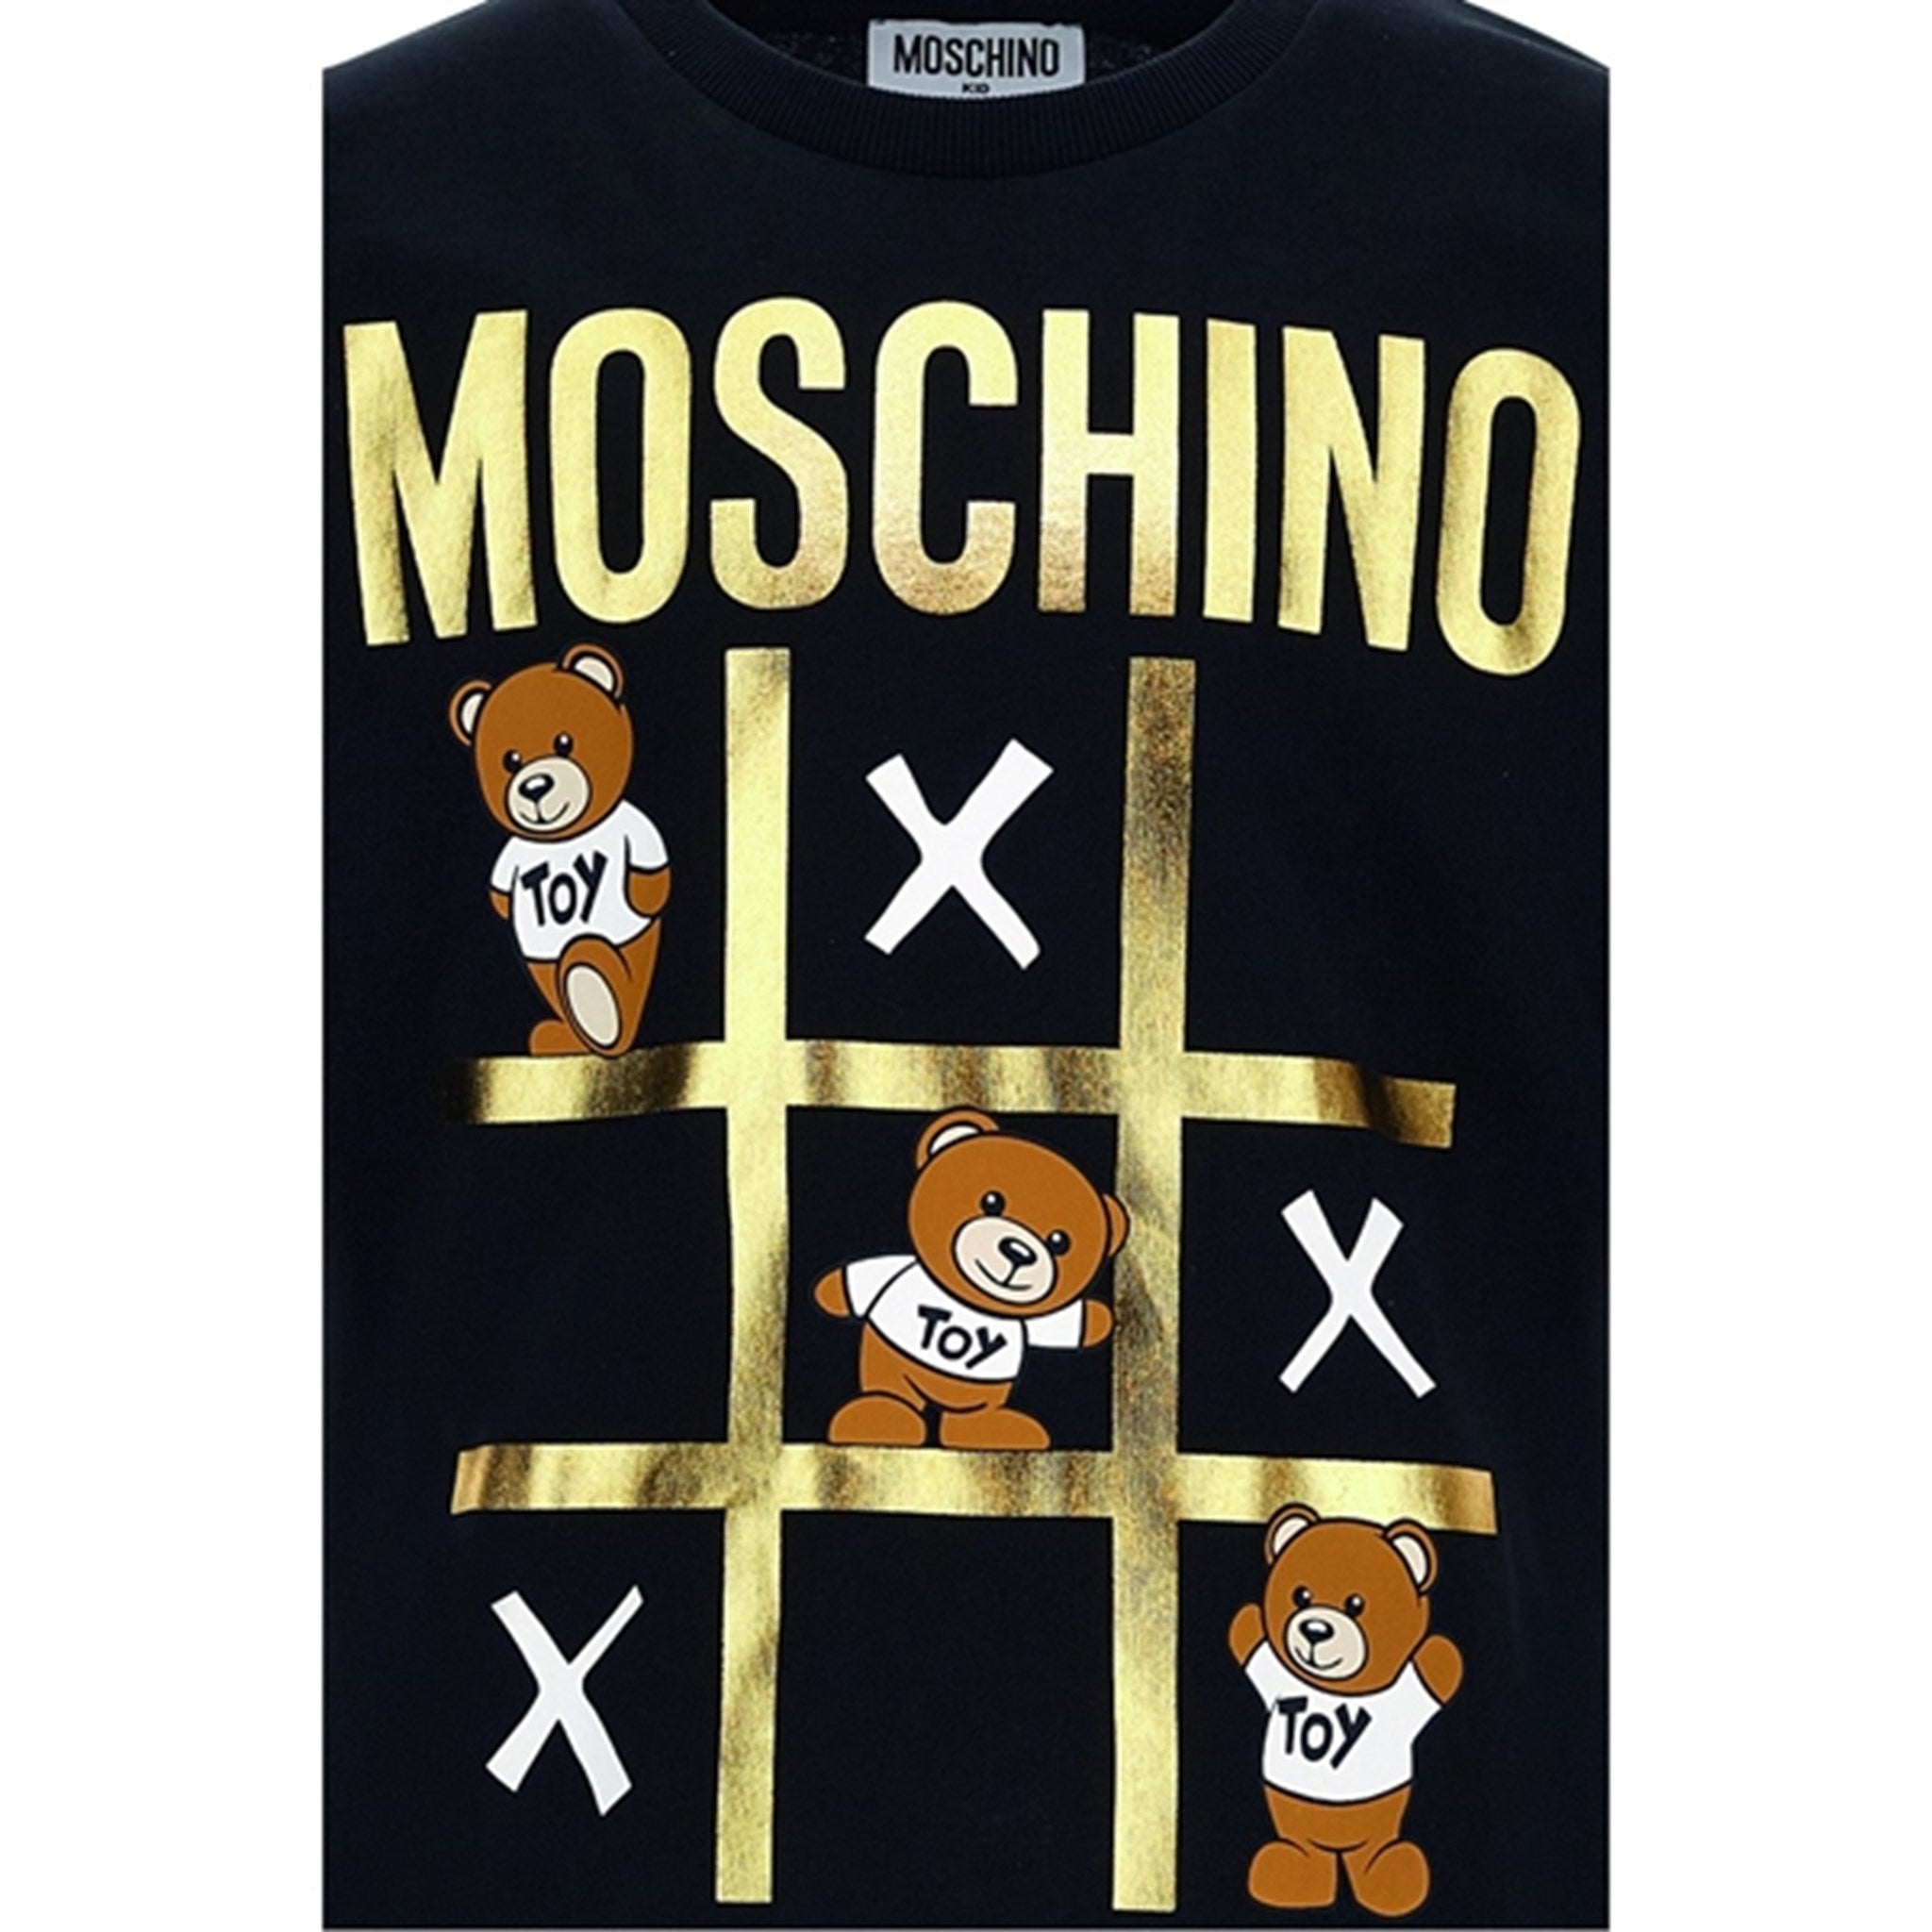 Moschino Black T-Shirt Maxi 2